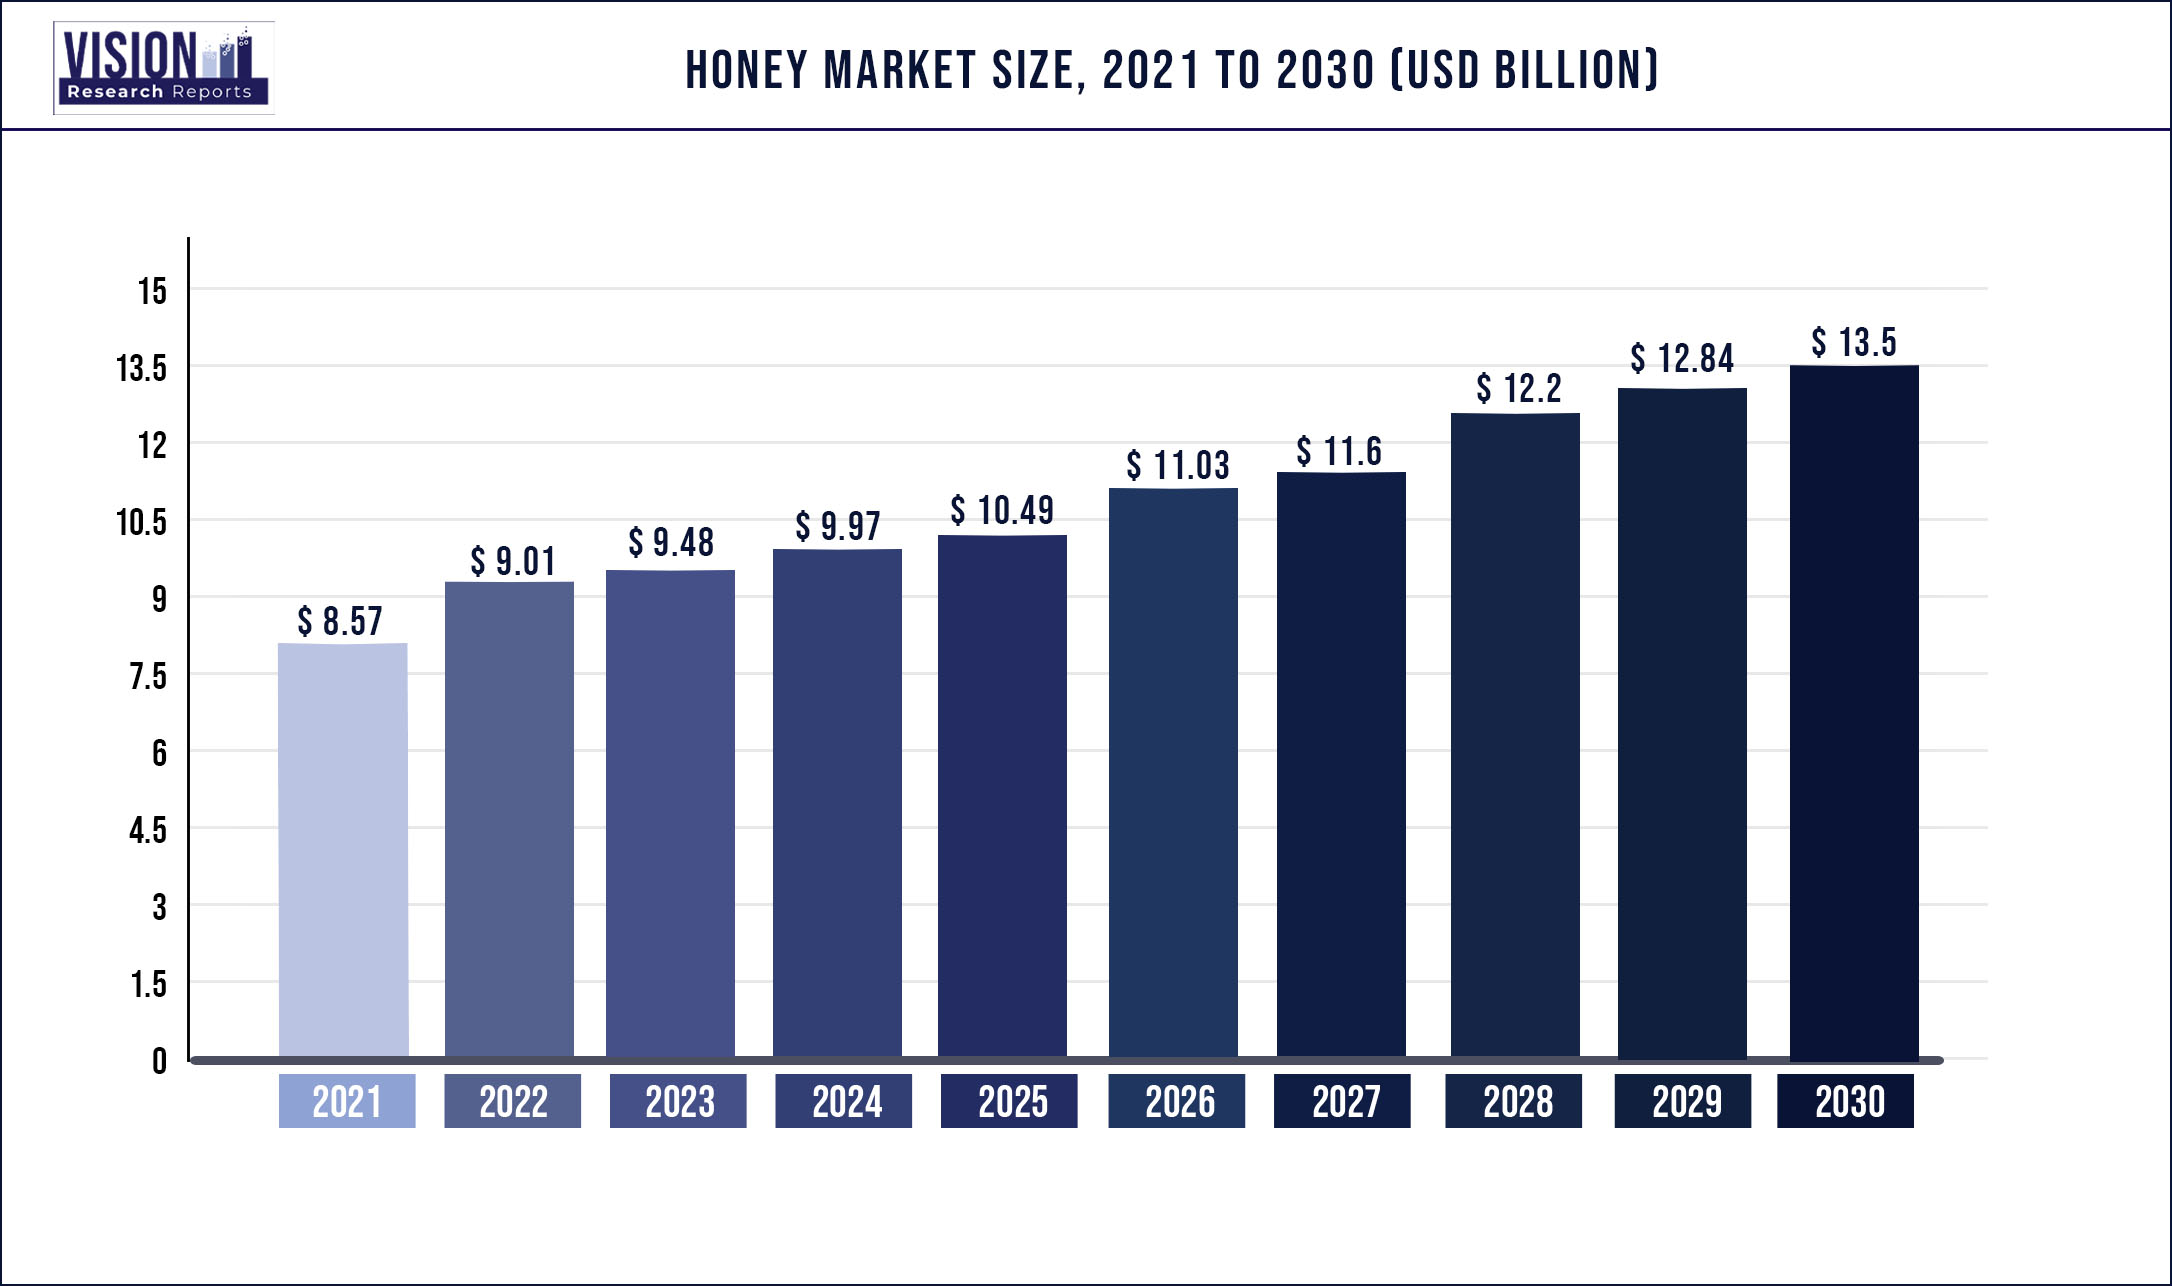 Honey Market Size 2021 to 2030